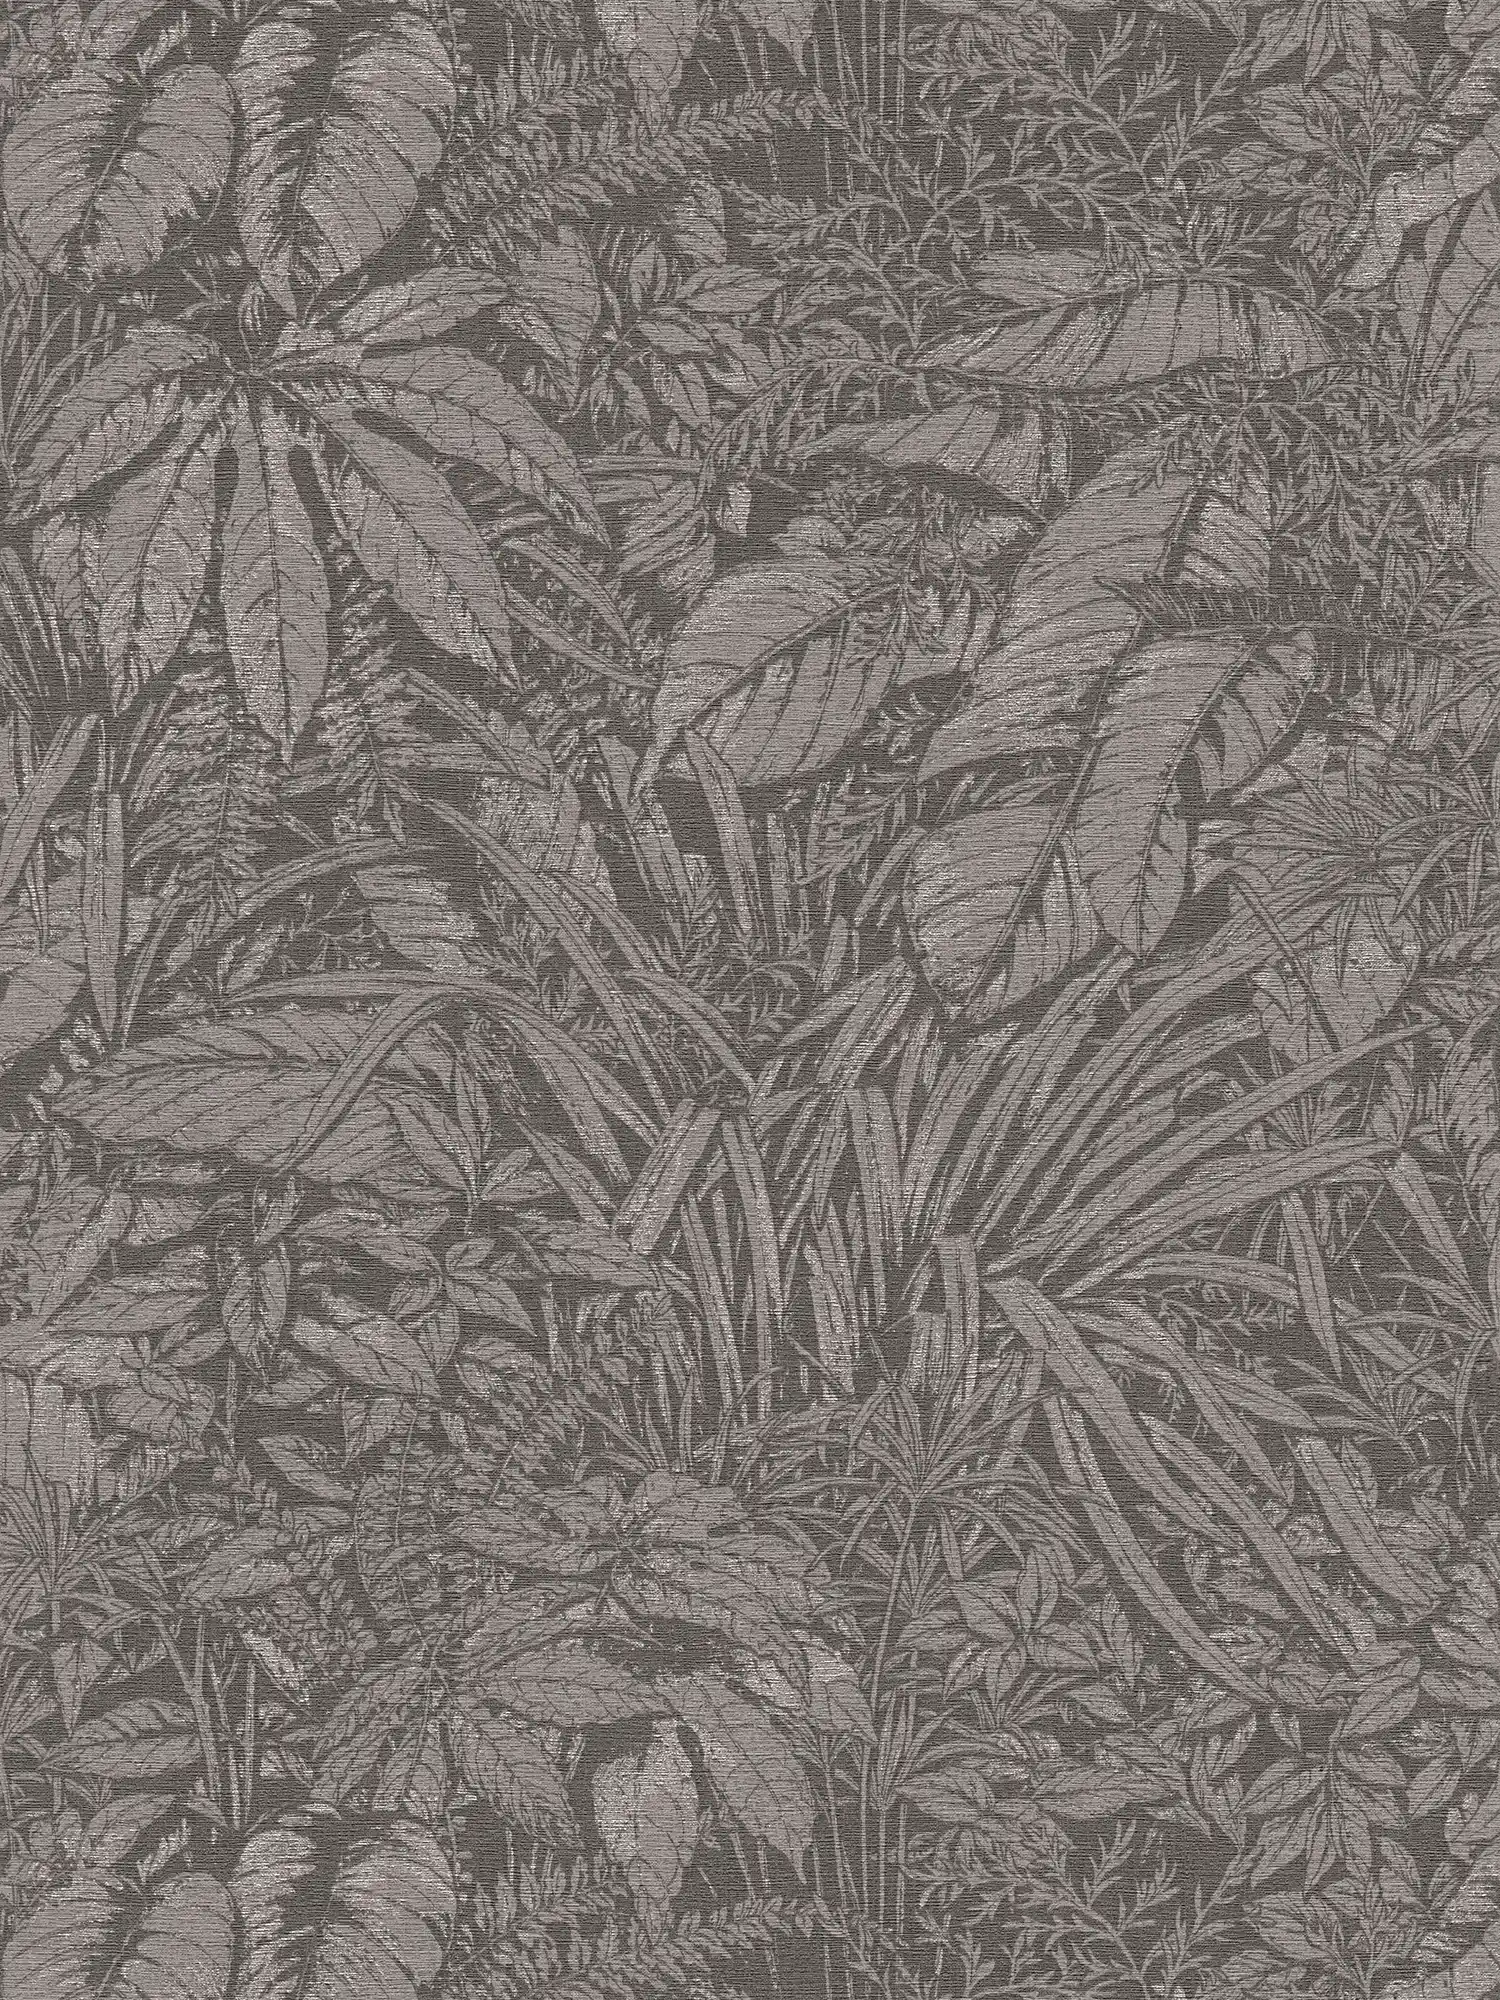 Vliesbehang met bloemenbladmotief - grijs, zwart, zilver
